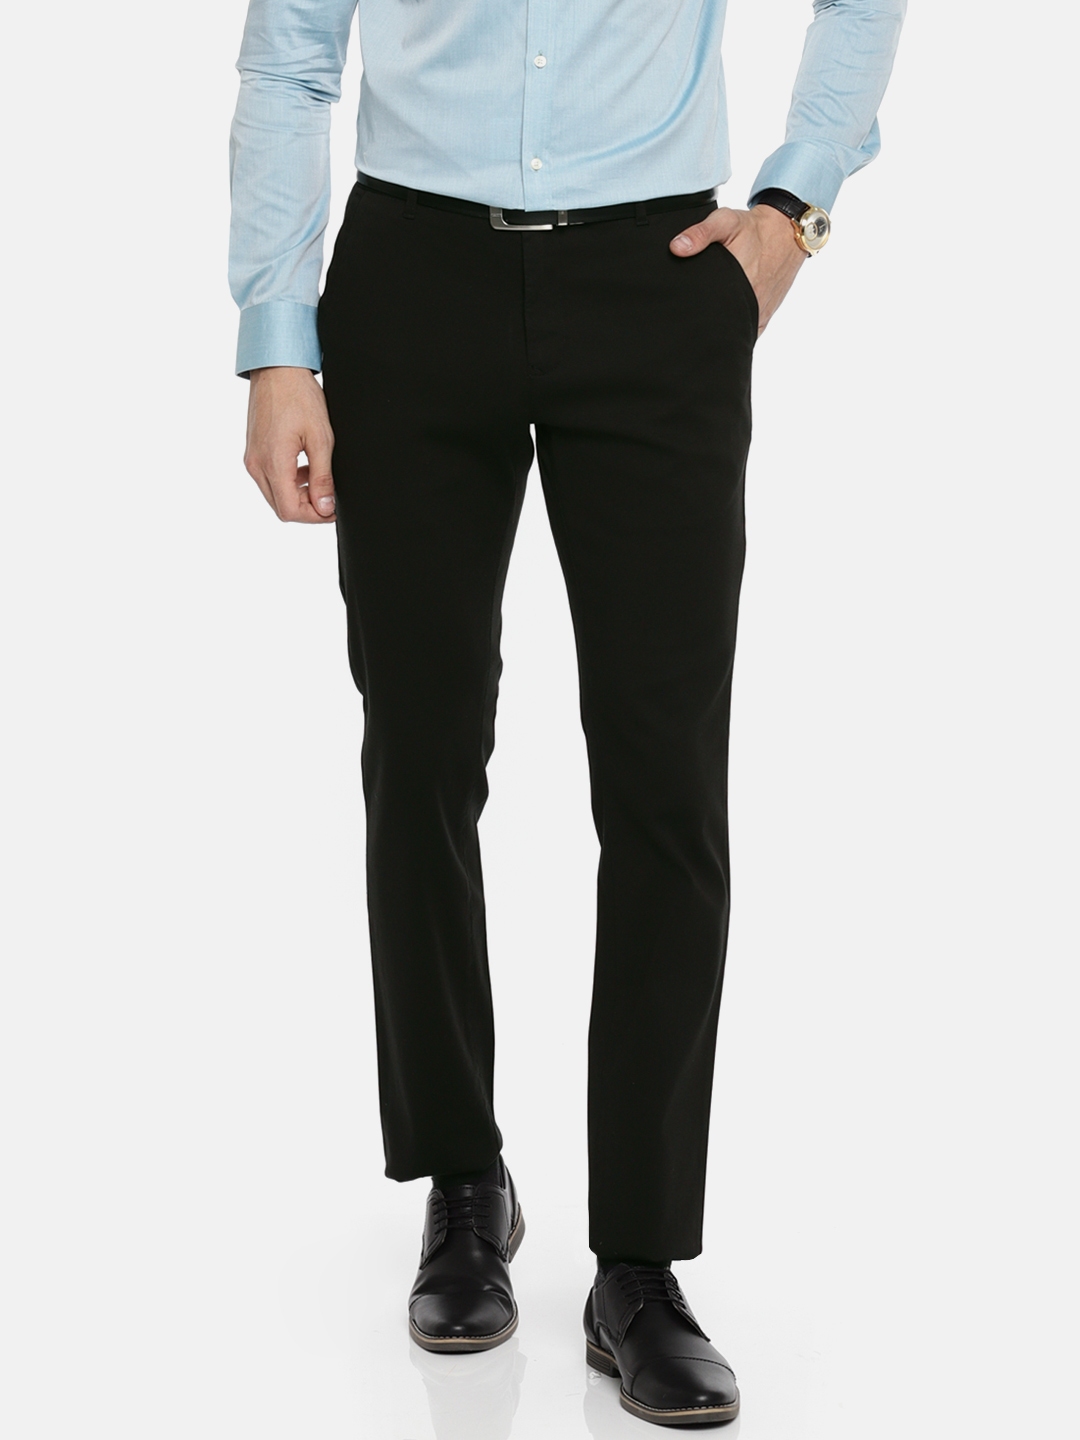 Colorplus Mens Regular Fit Formal Trousers